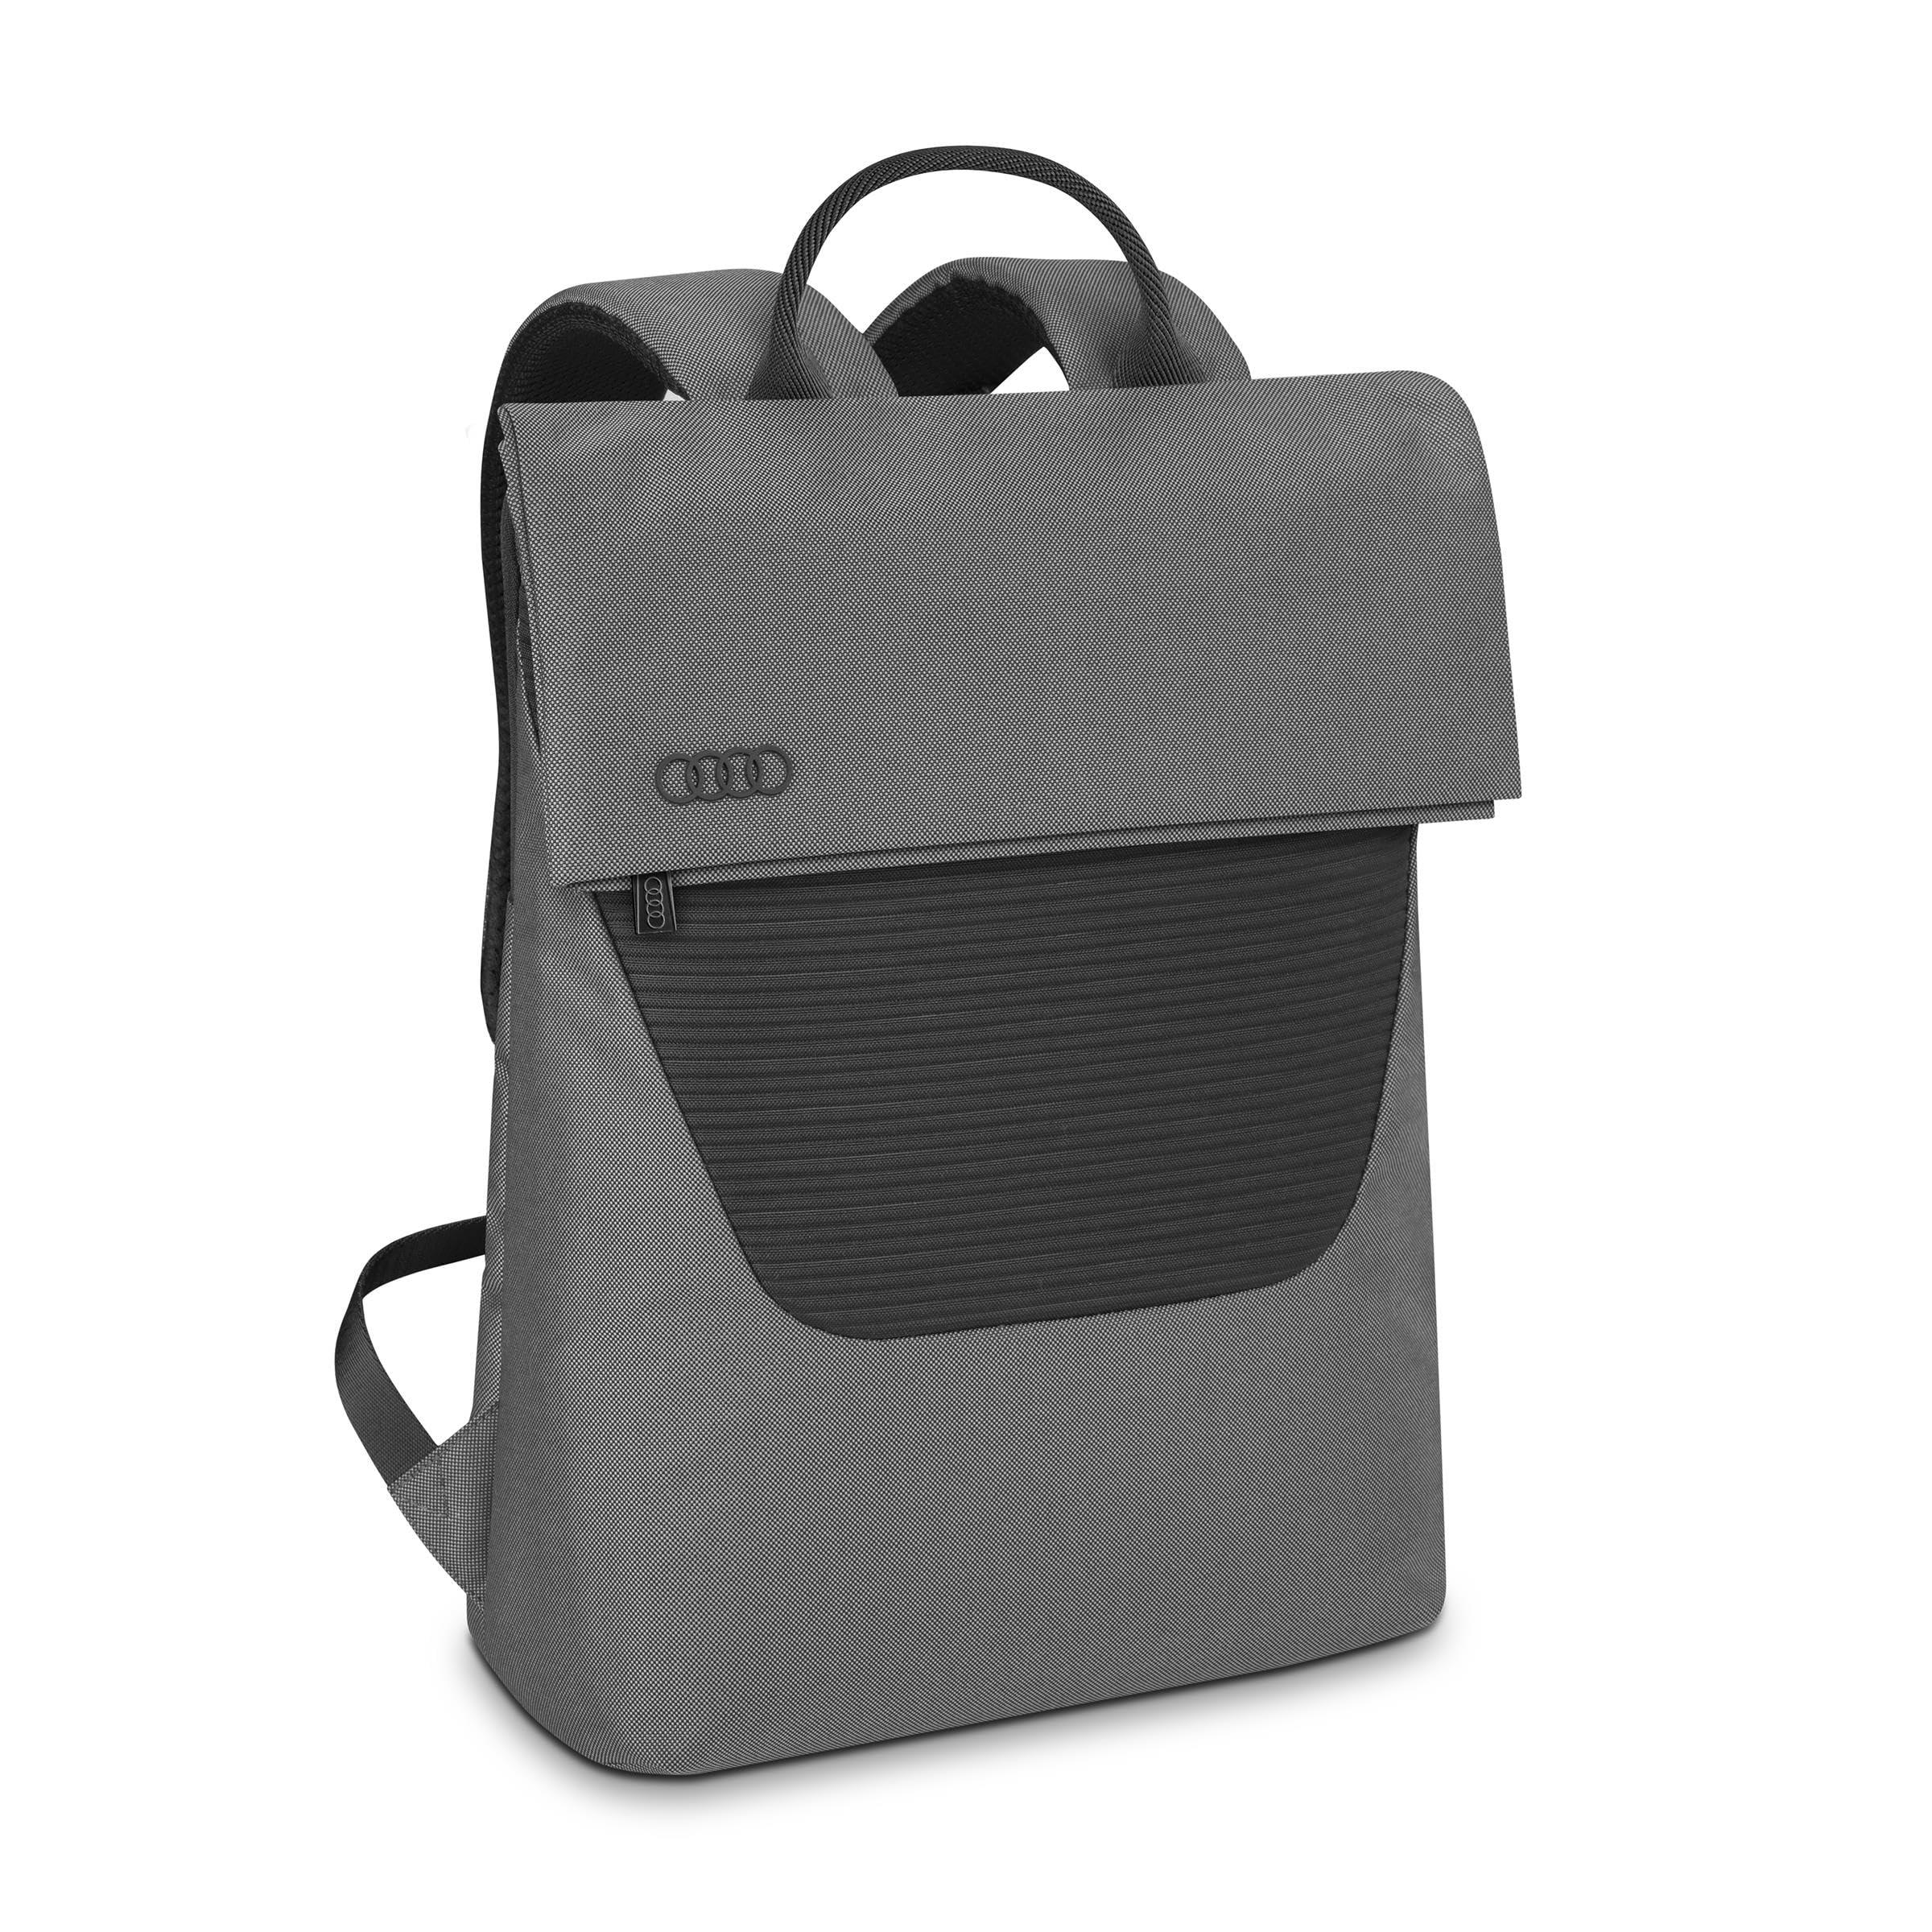 Audi 3152300400 Rucksack Backpack Ringe Logo Tasche, gepolstertes Laptopfach für 15 Zoll Laptops, grau/schwarz